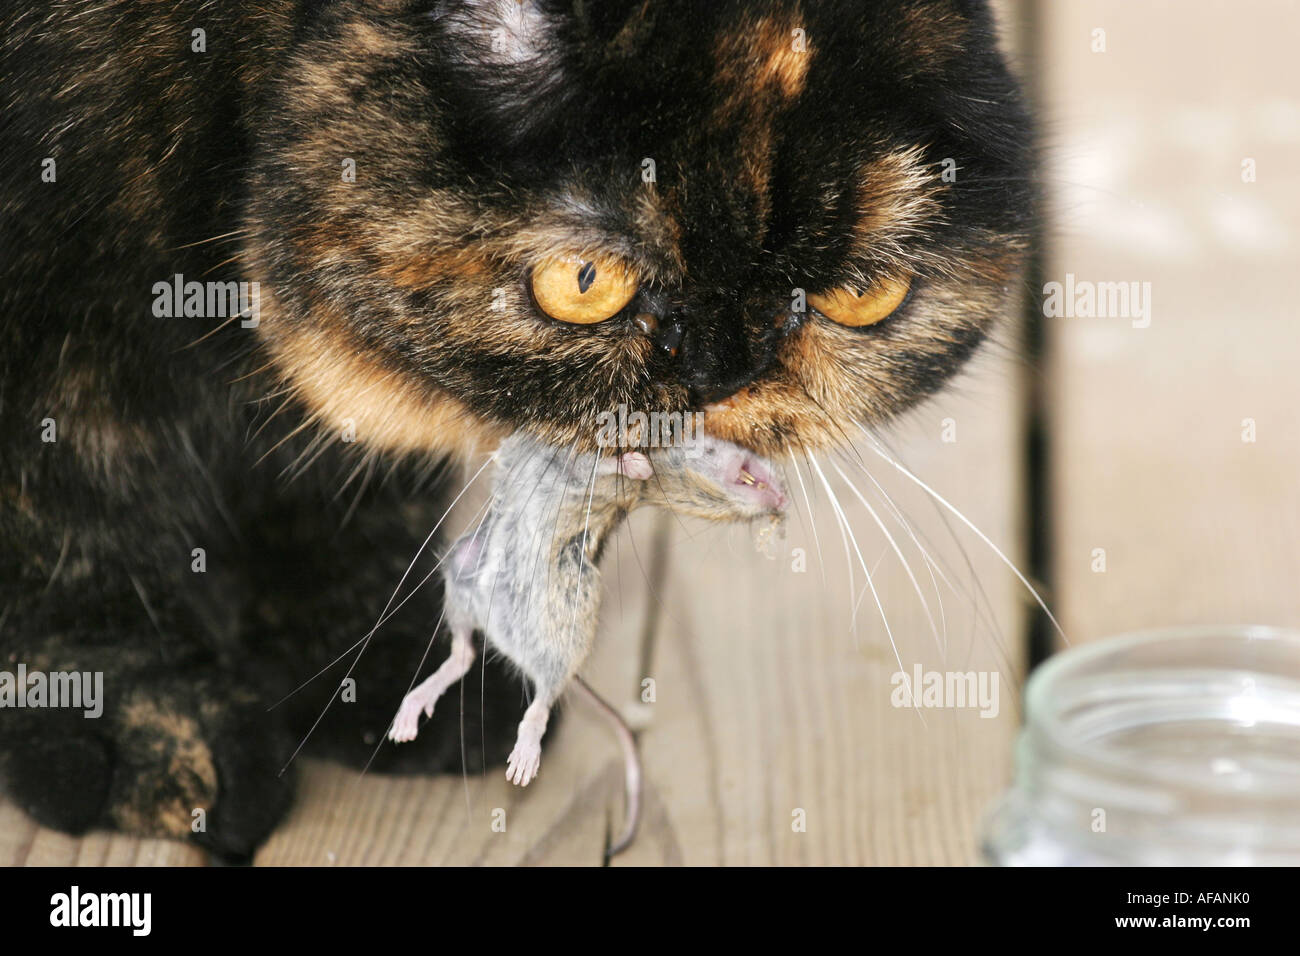 Katze mit einer neu gefangene Maus im Maul. Die Katze ist eine kurzhaarige Perserkatze Arten exotisch Stockfoto